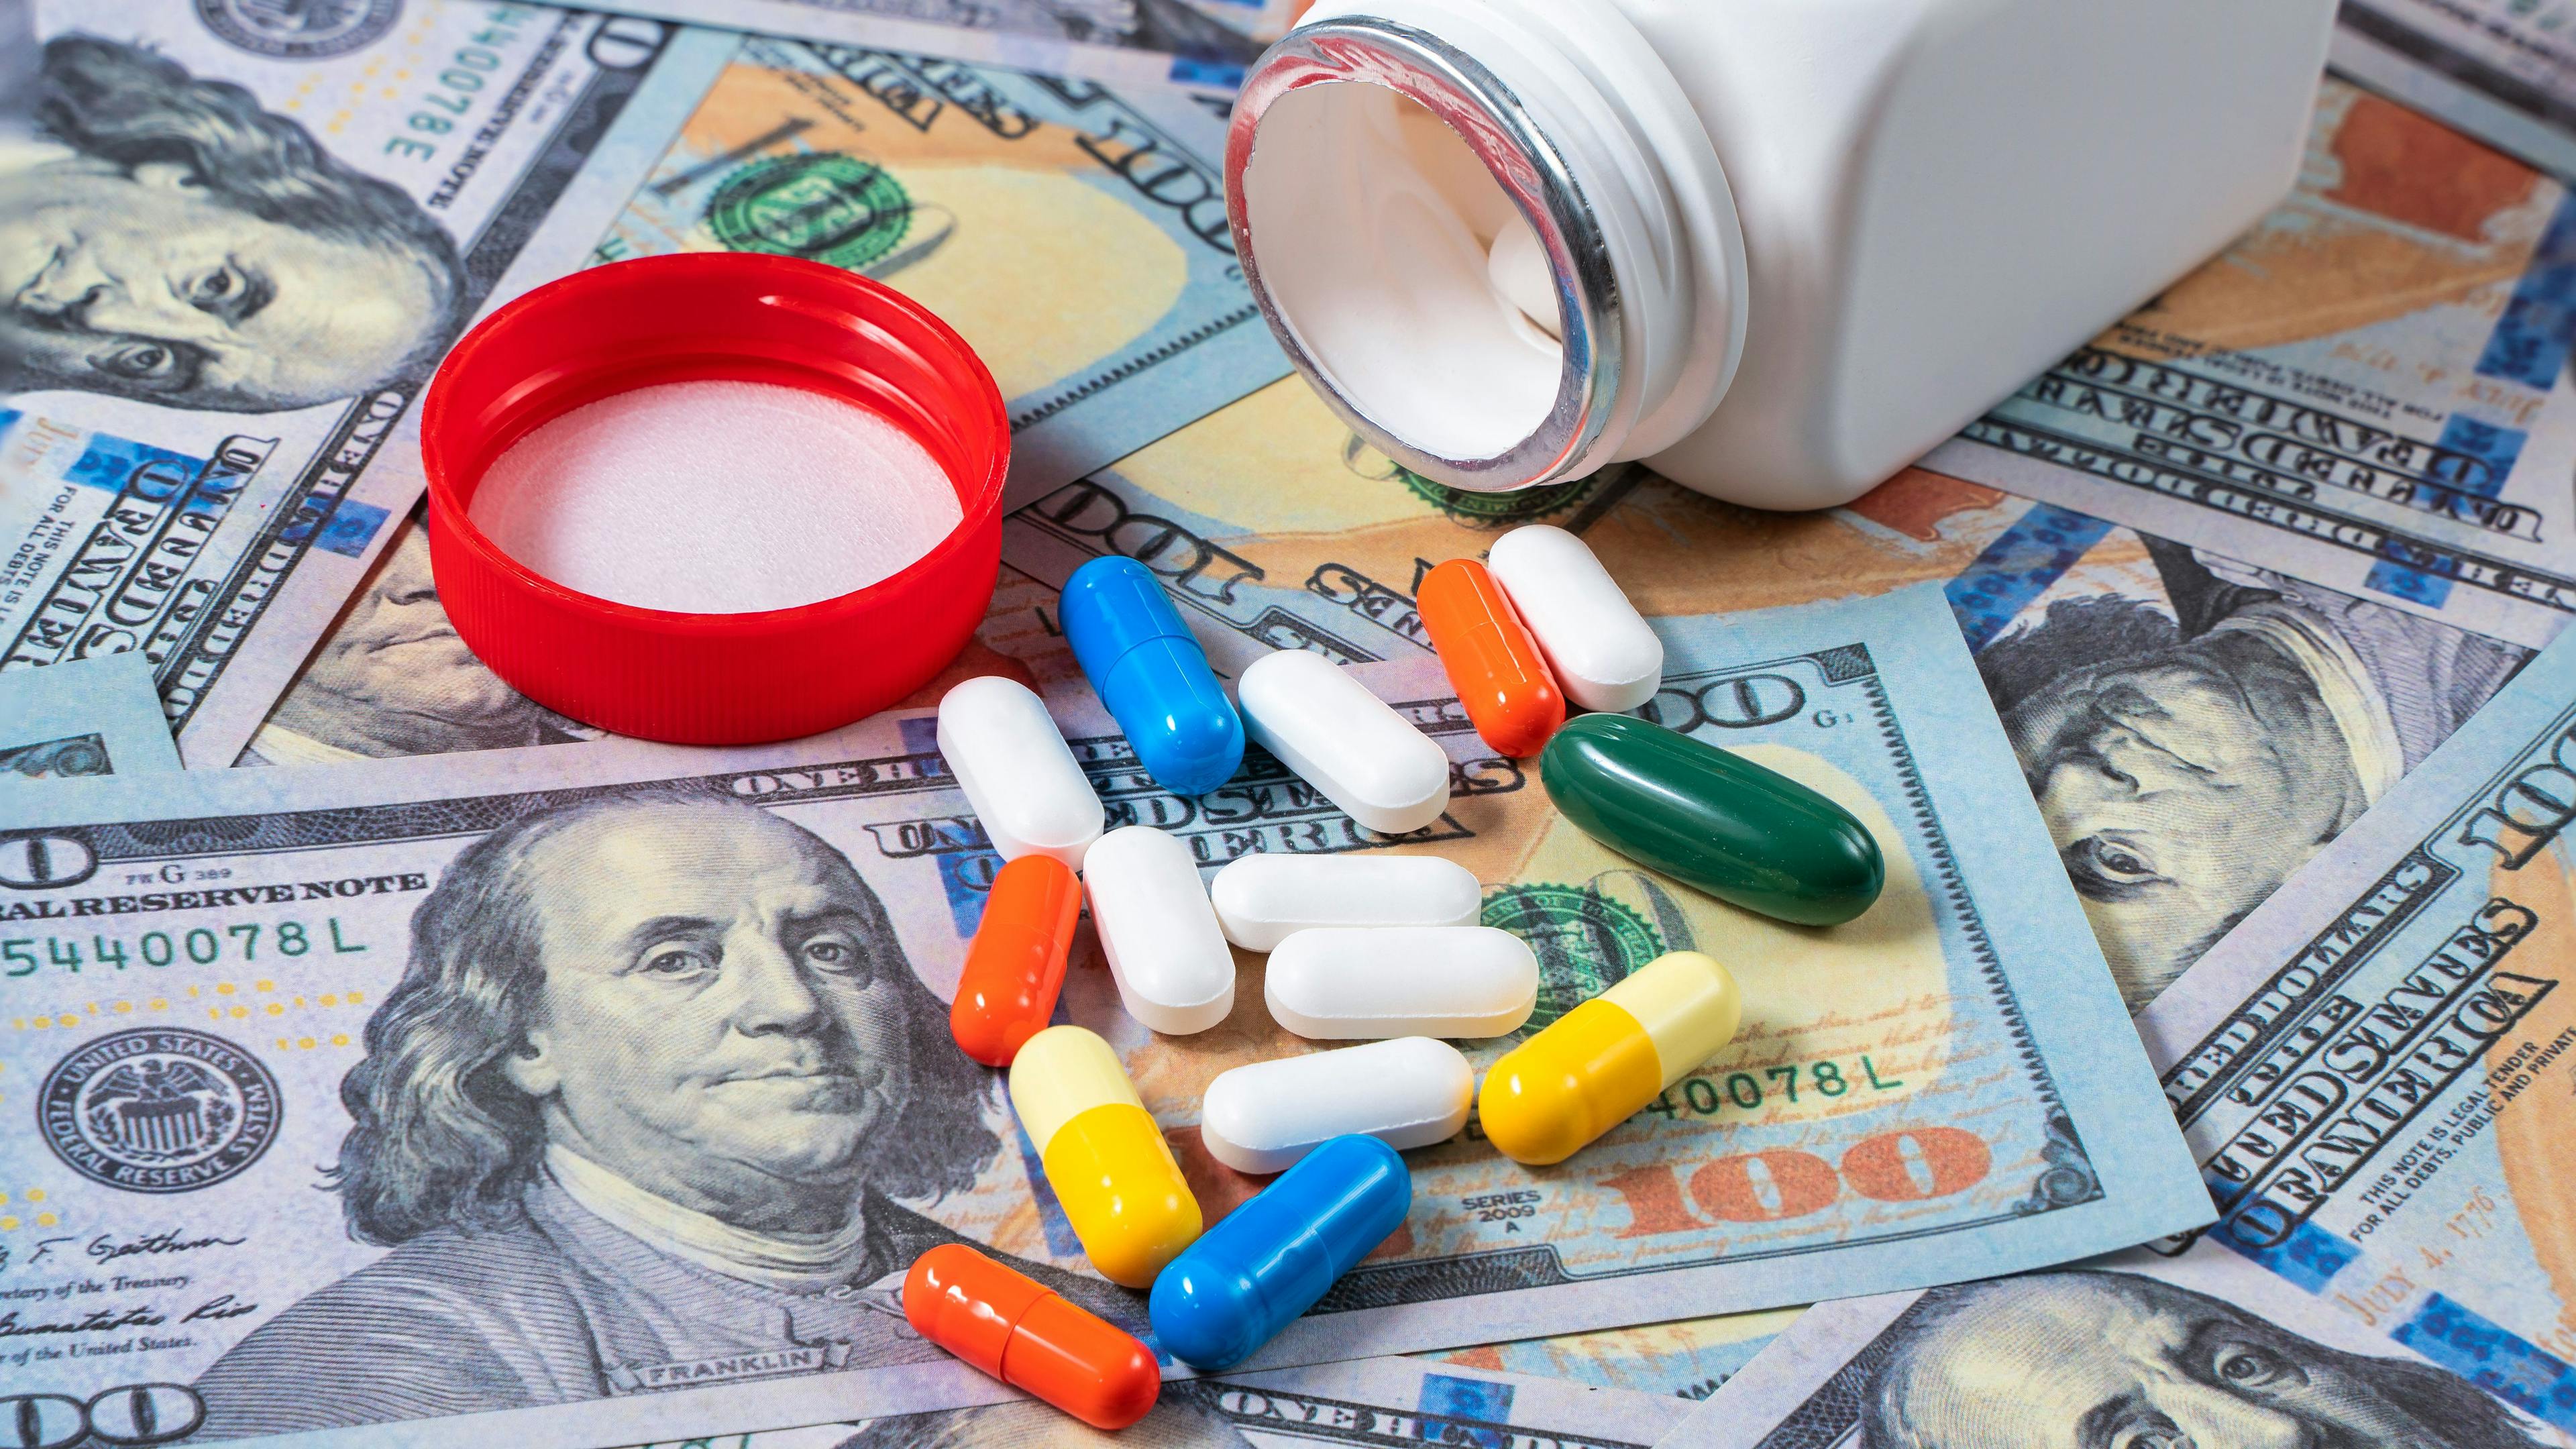 Drug capsules spilled on hundred-dollar bills ©Narak-stock.adobe.com